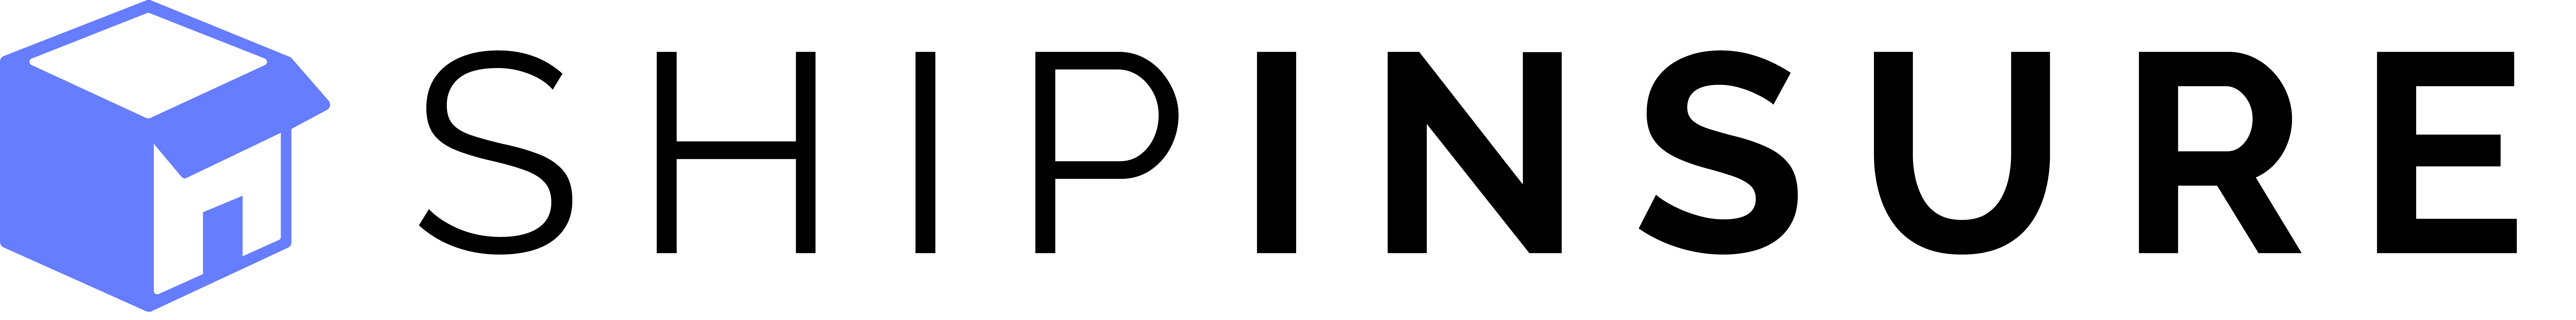 ShipInsure logo